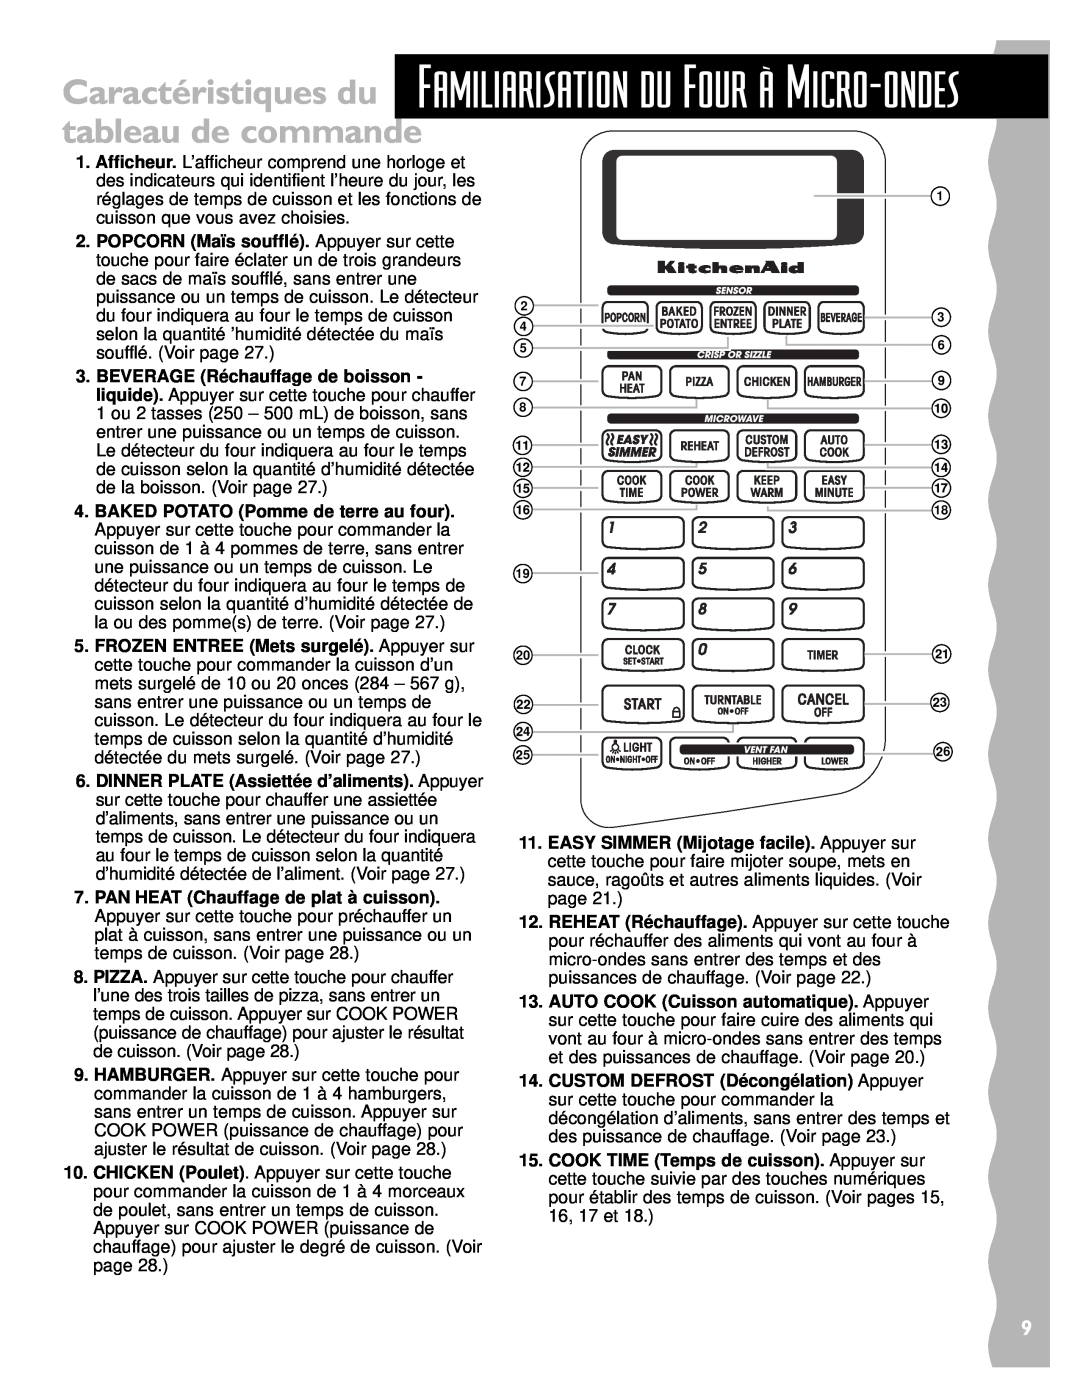 Whirlpool YKHMS145J warranty Caractéristiques du Familiarisation du Four ˆË Micro-ondes, tableau de commande 